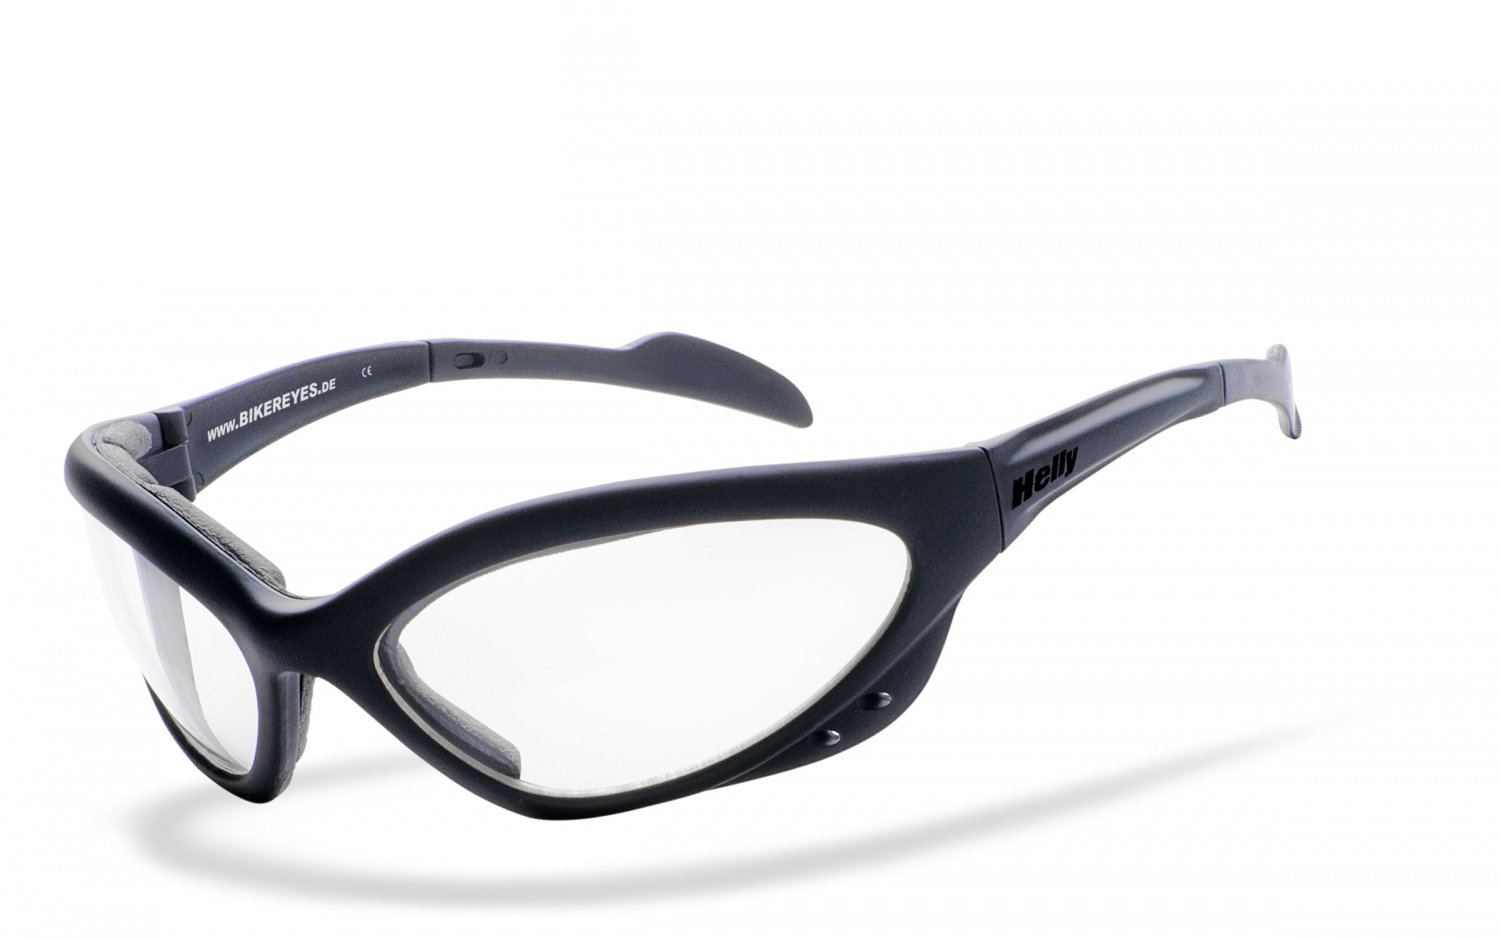 Helly Bikereyes | gepolsterte Sportbrille, Fahrradbrille, Sonnenbrille, Bikerbrille, Radbrille, UV400 Schutzfilter